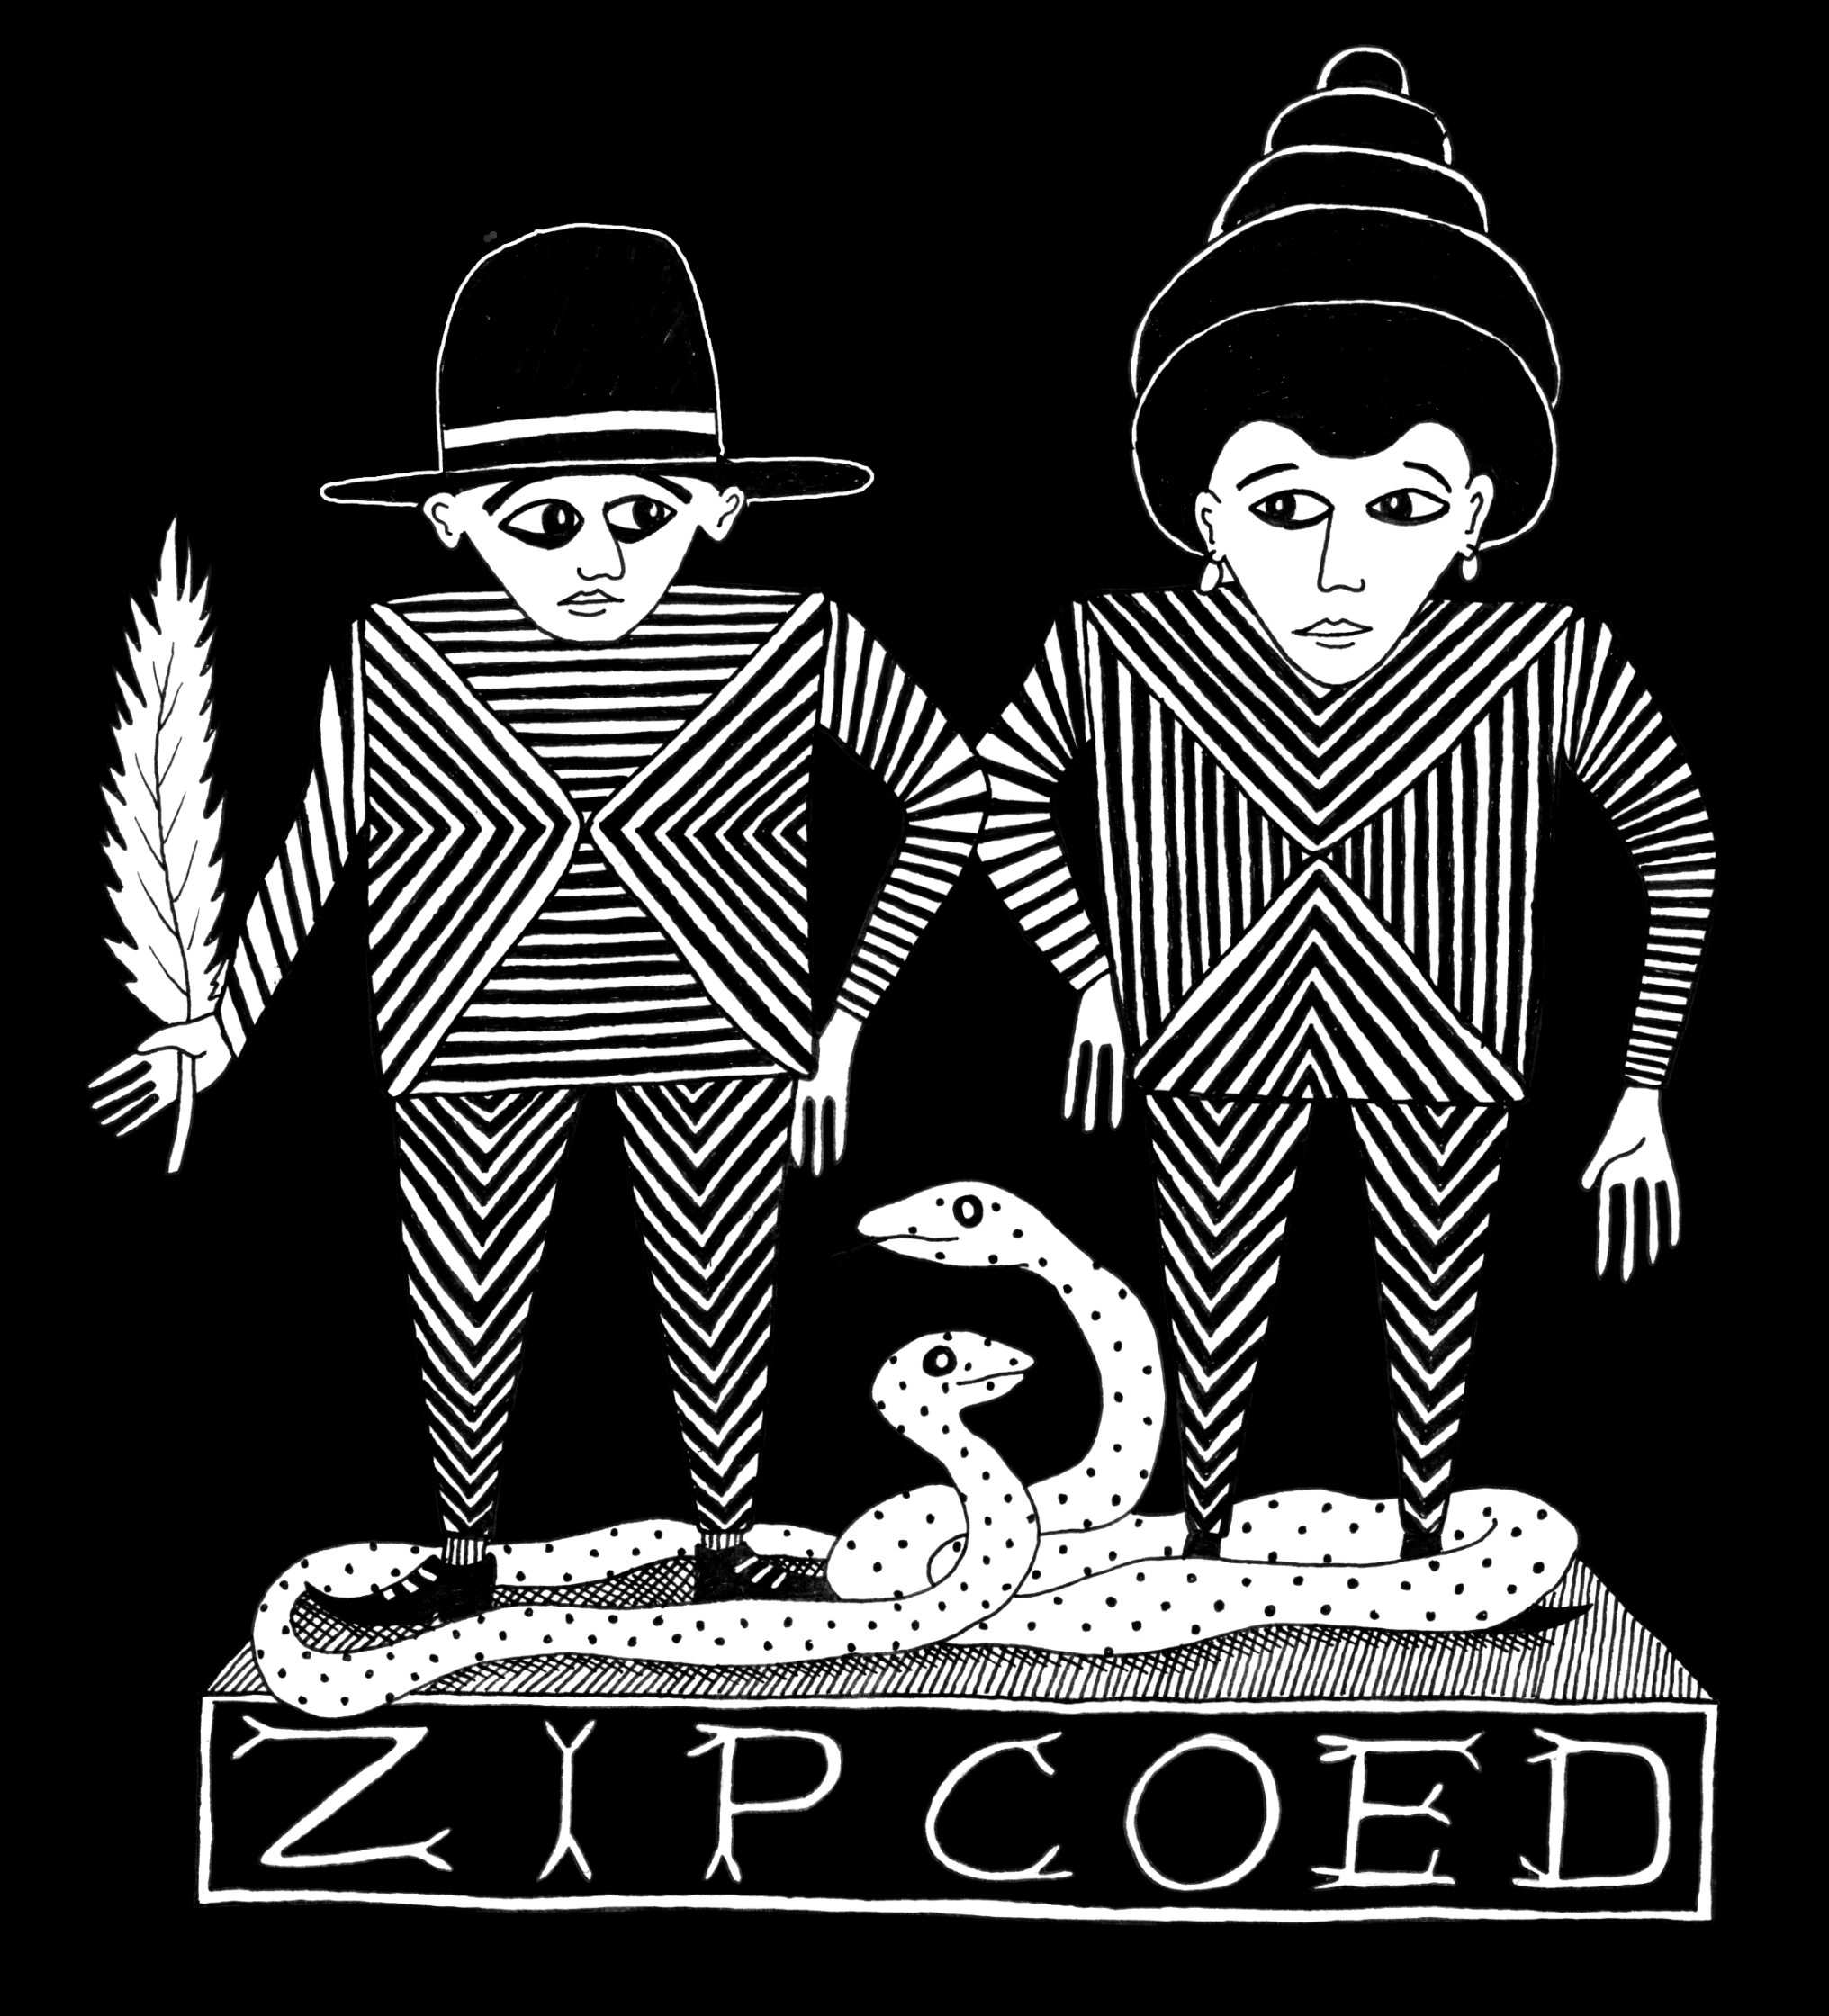 Zipcoed